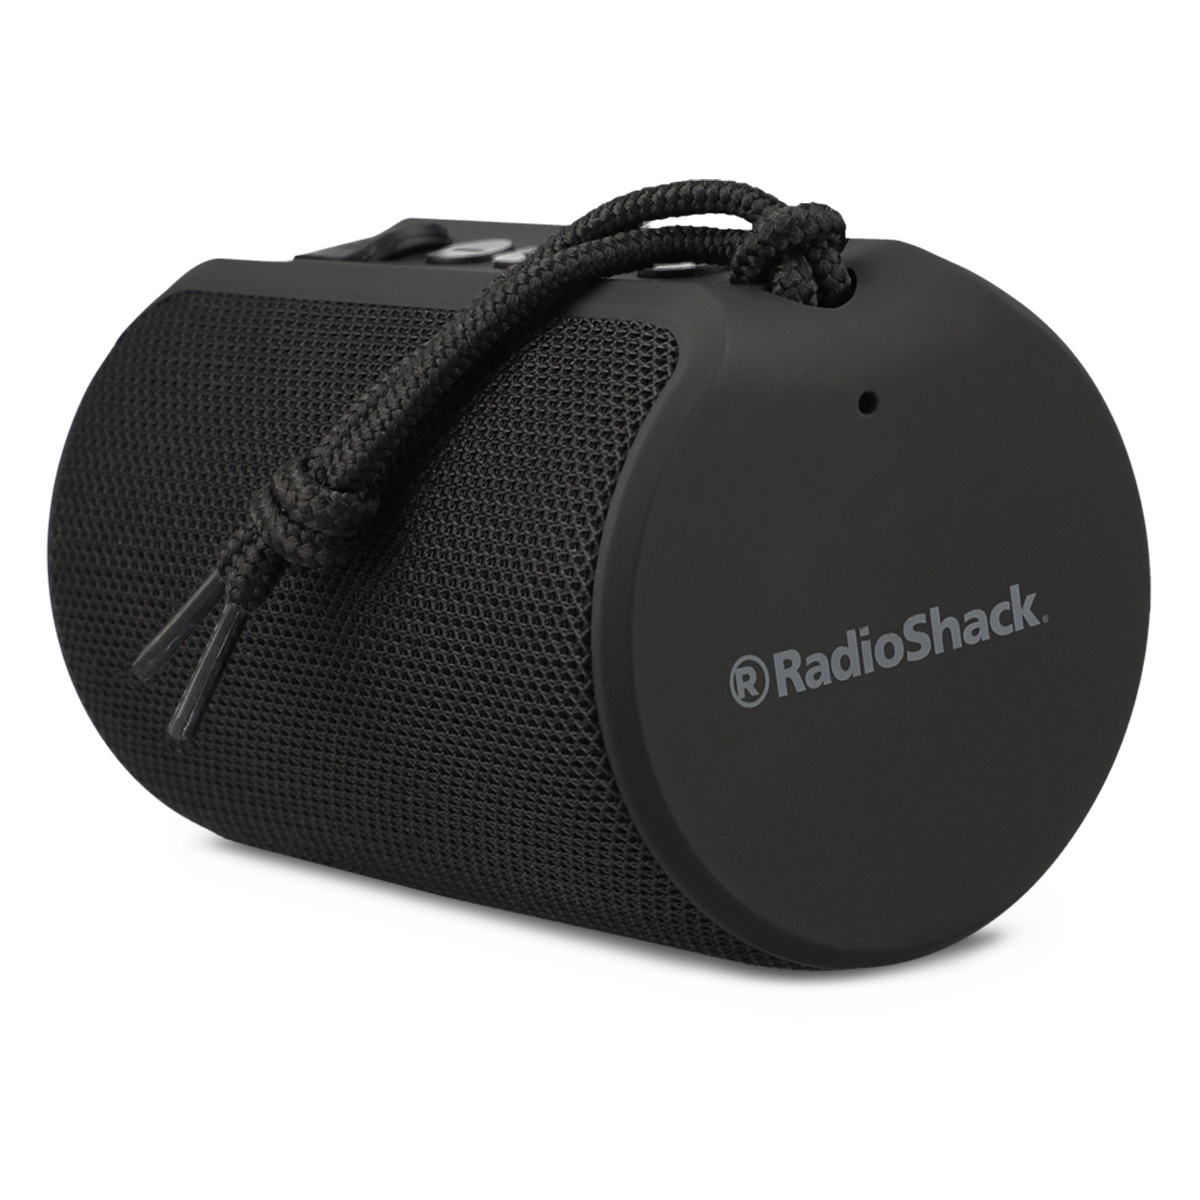 Bafle Doble Recargable RadioShack 6 pulg. Bluetooth USB Luz Frontal Flama, Bocinas, Bafles y Barras de Sonido, Audio, Originales RadioShack, Todas, Categoría